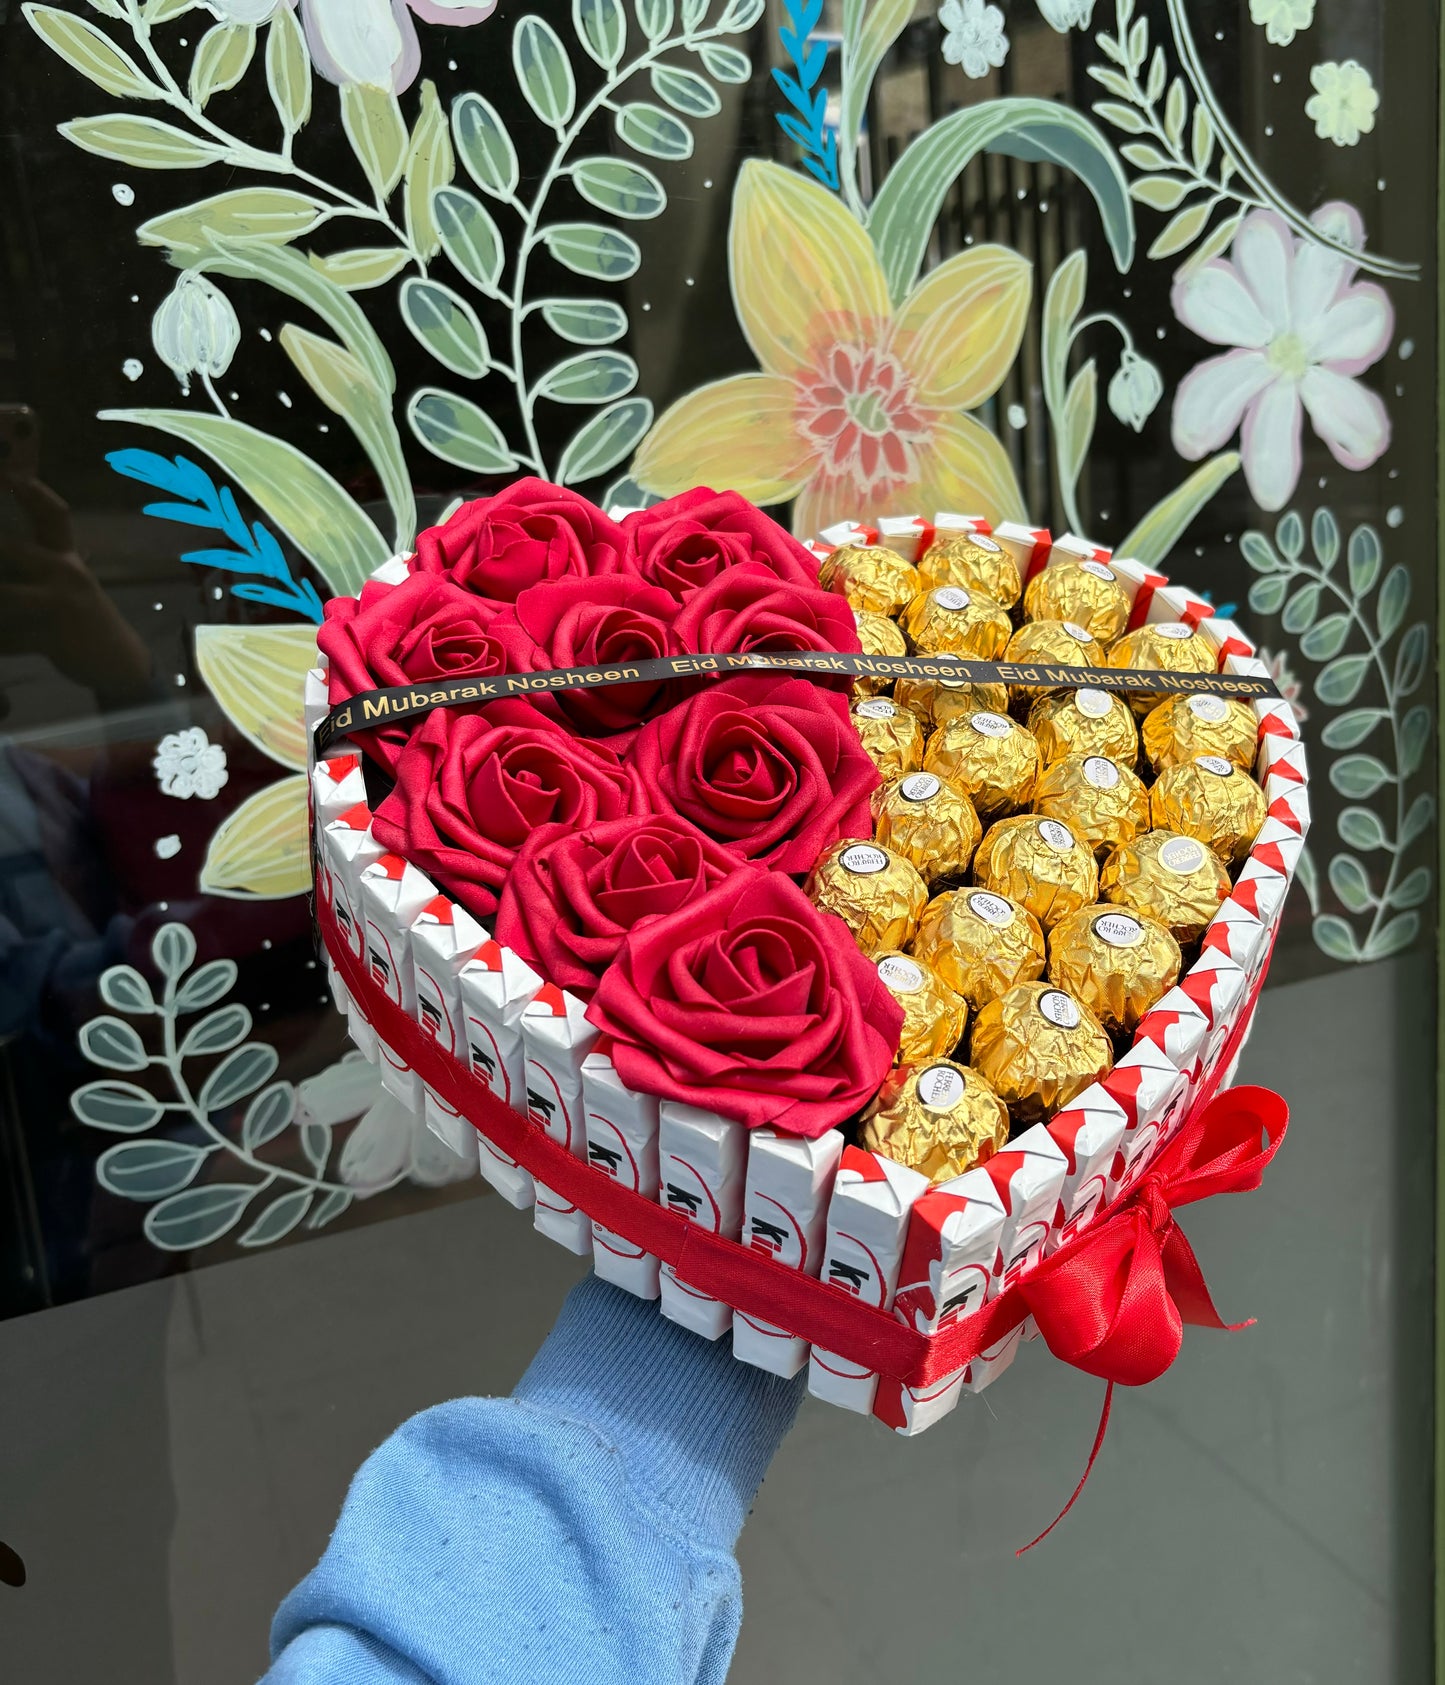 Kinder Ferrero Rocher & Rose Loveheart Hamper Gift